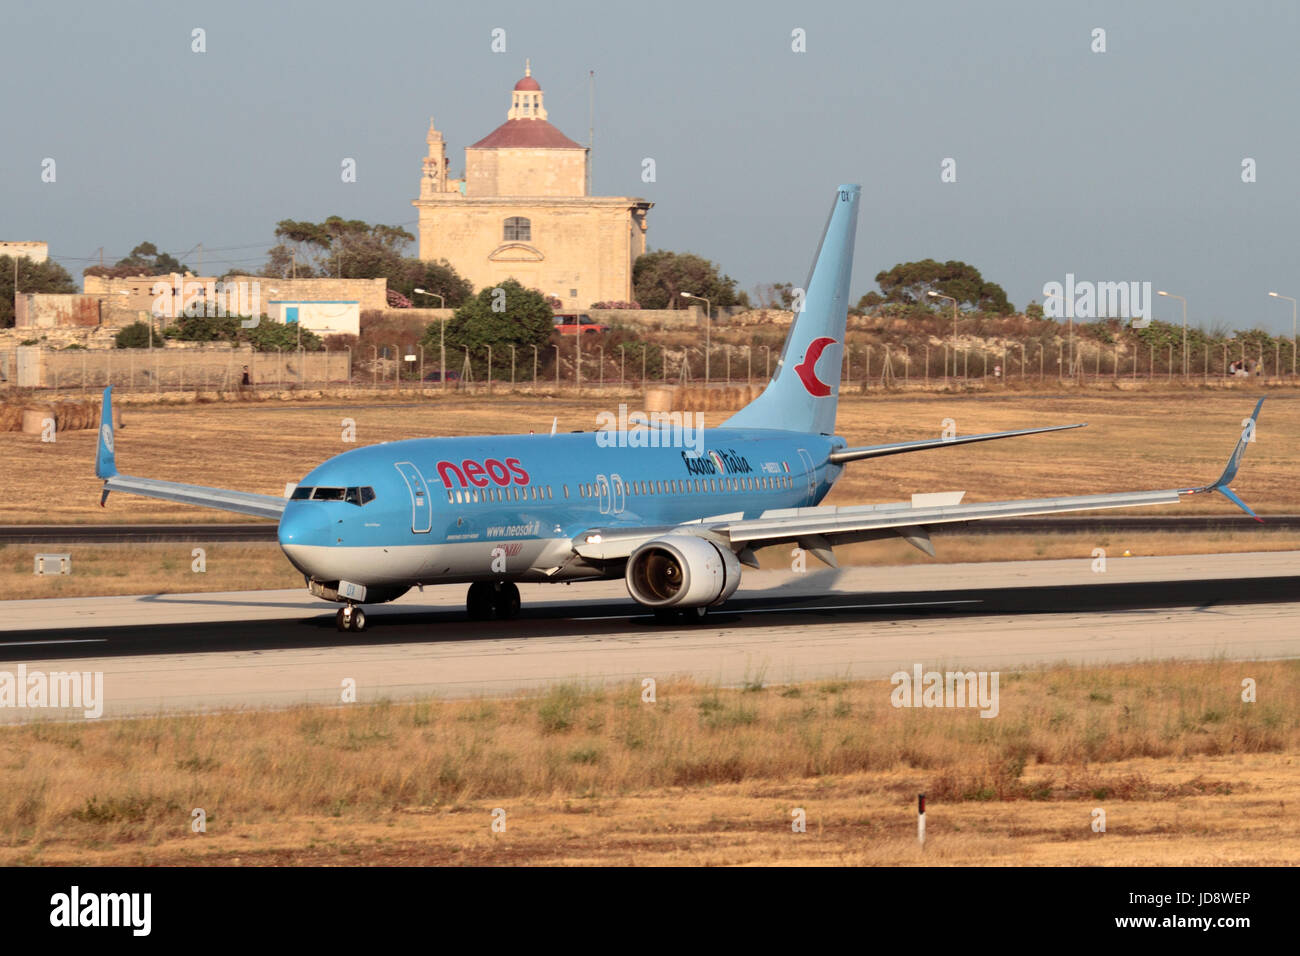 Los viajes aéreos en la UE. Neos vuelo Boeing 737-800 al aterrizar en la pista de aterrizaje en el aeropuerto de Malta, con Ta' Loretu capilla, Gudja, en el fondo Foto de stock